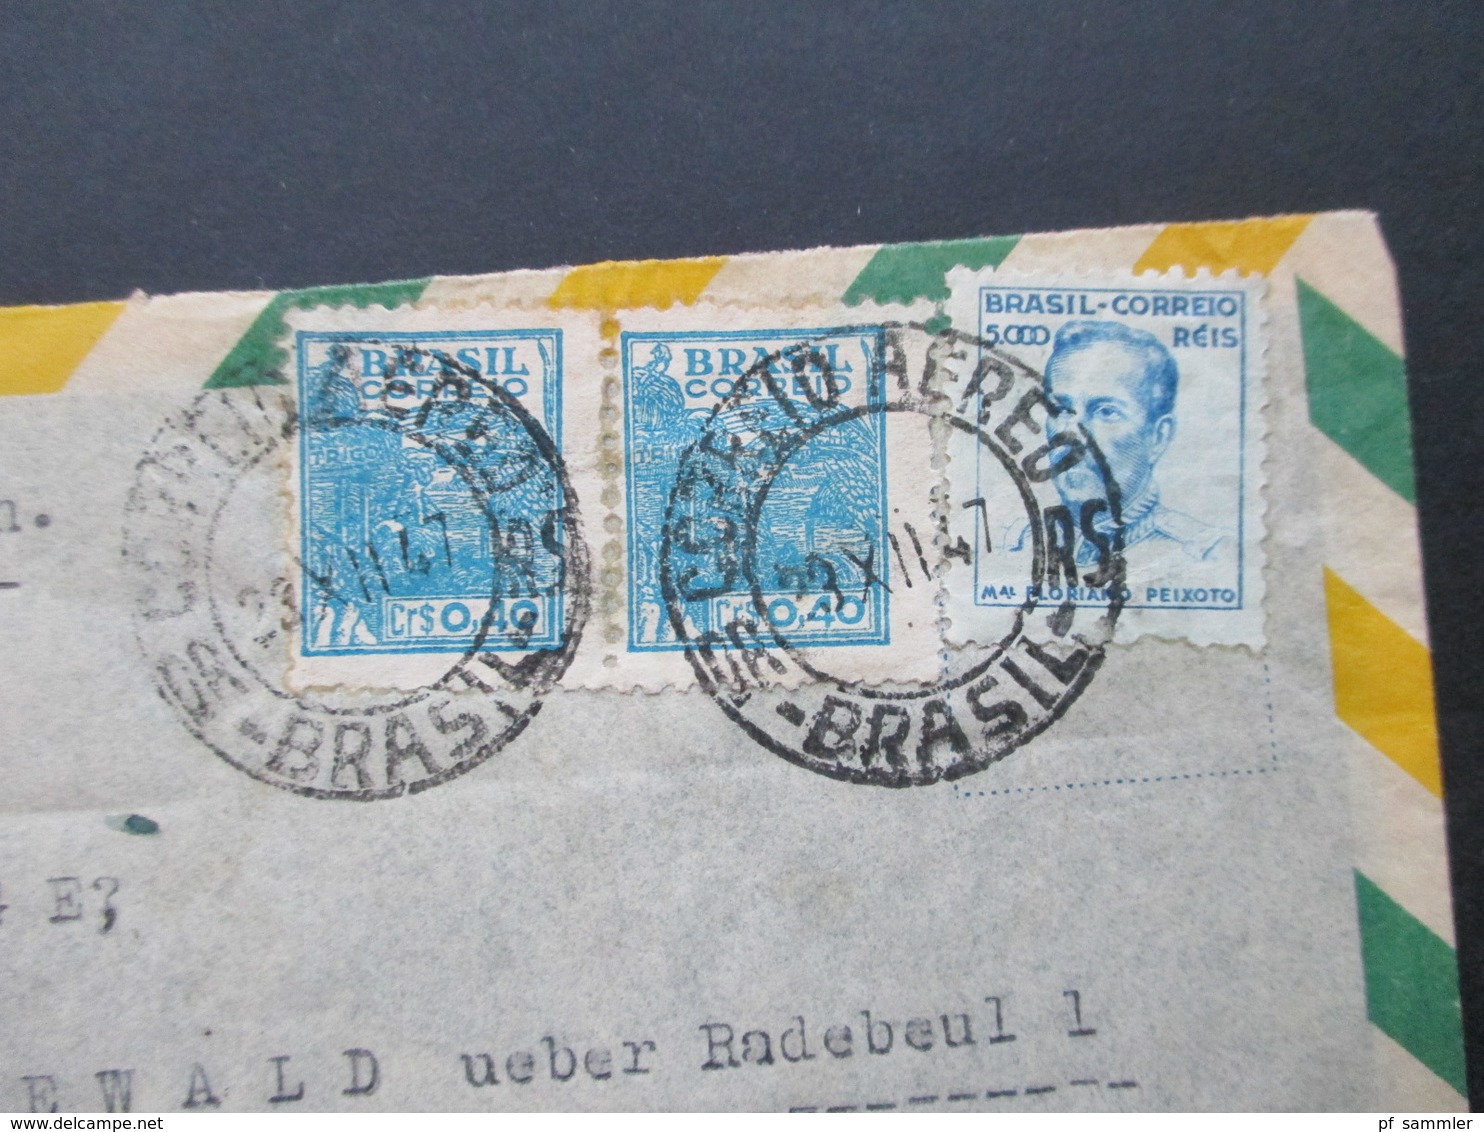 Brasilien 1947 Luftpostbrief Nach Friedewald Mit Ak Stempel Berlin Paolo Roscher Reprensentante Rua Carlos V. Koseritz - Covers & Documents